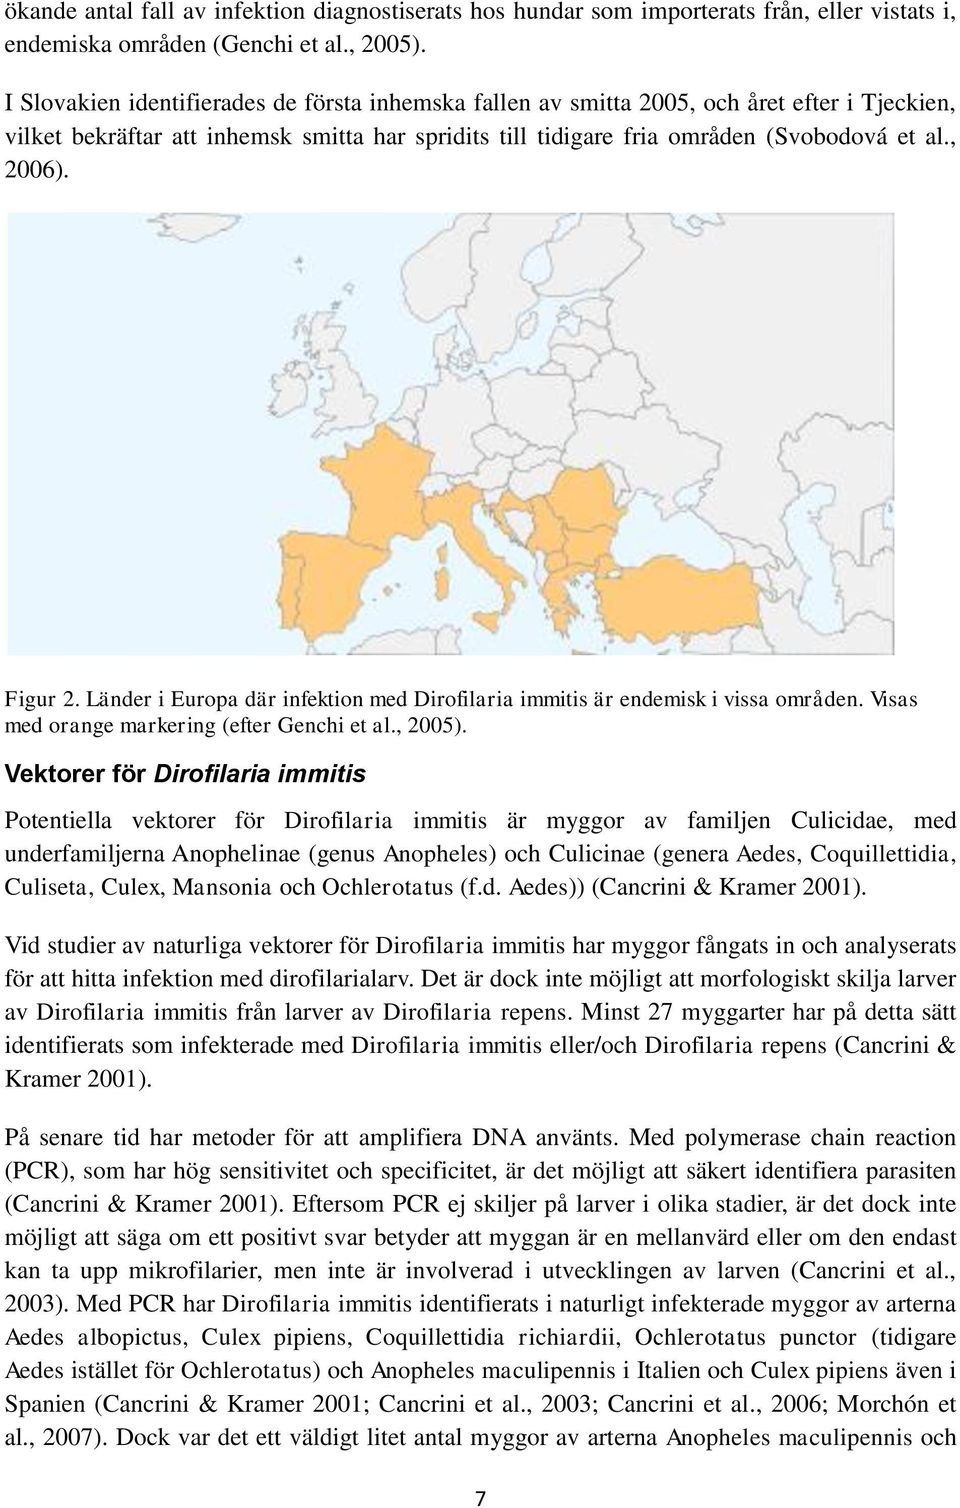 Figur 2. Länder i Europa där infektion med Dirofilaria immitis är endemisk i vissa områden. Visas med orange markering (efter Genchi et al., 2005).